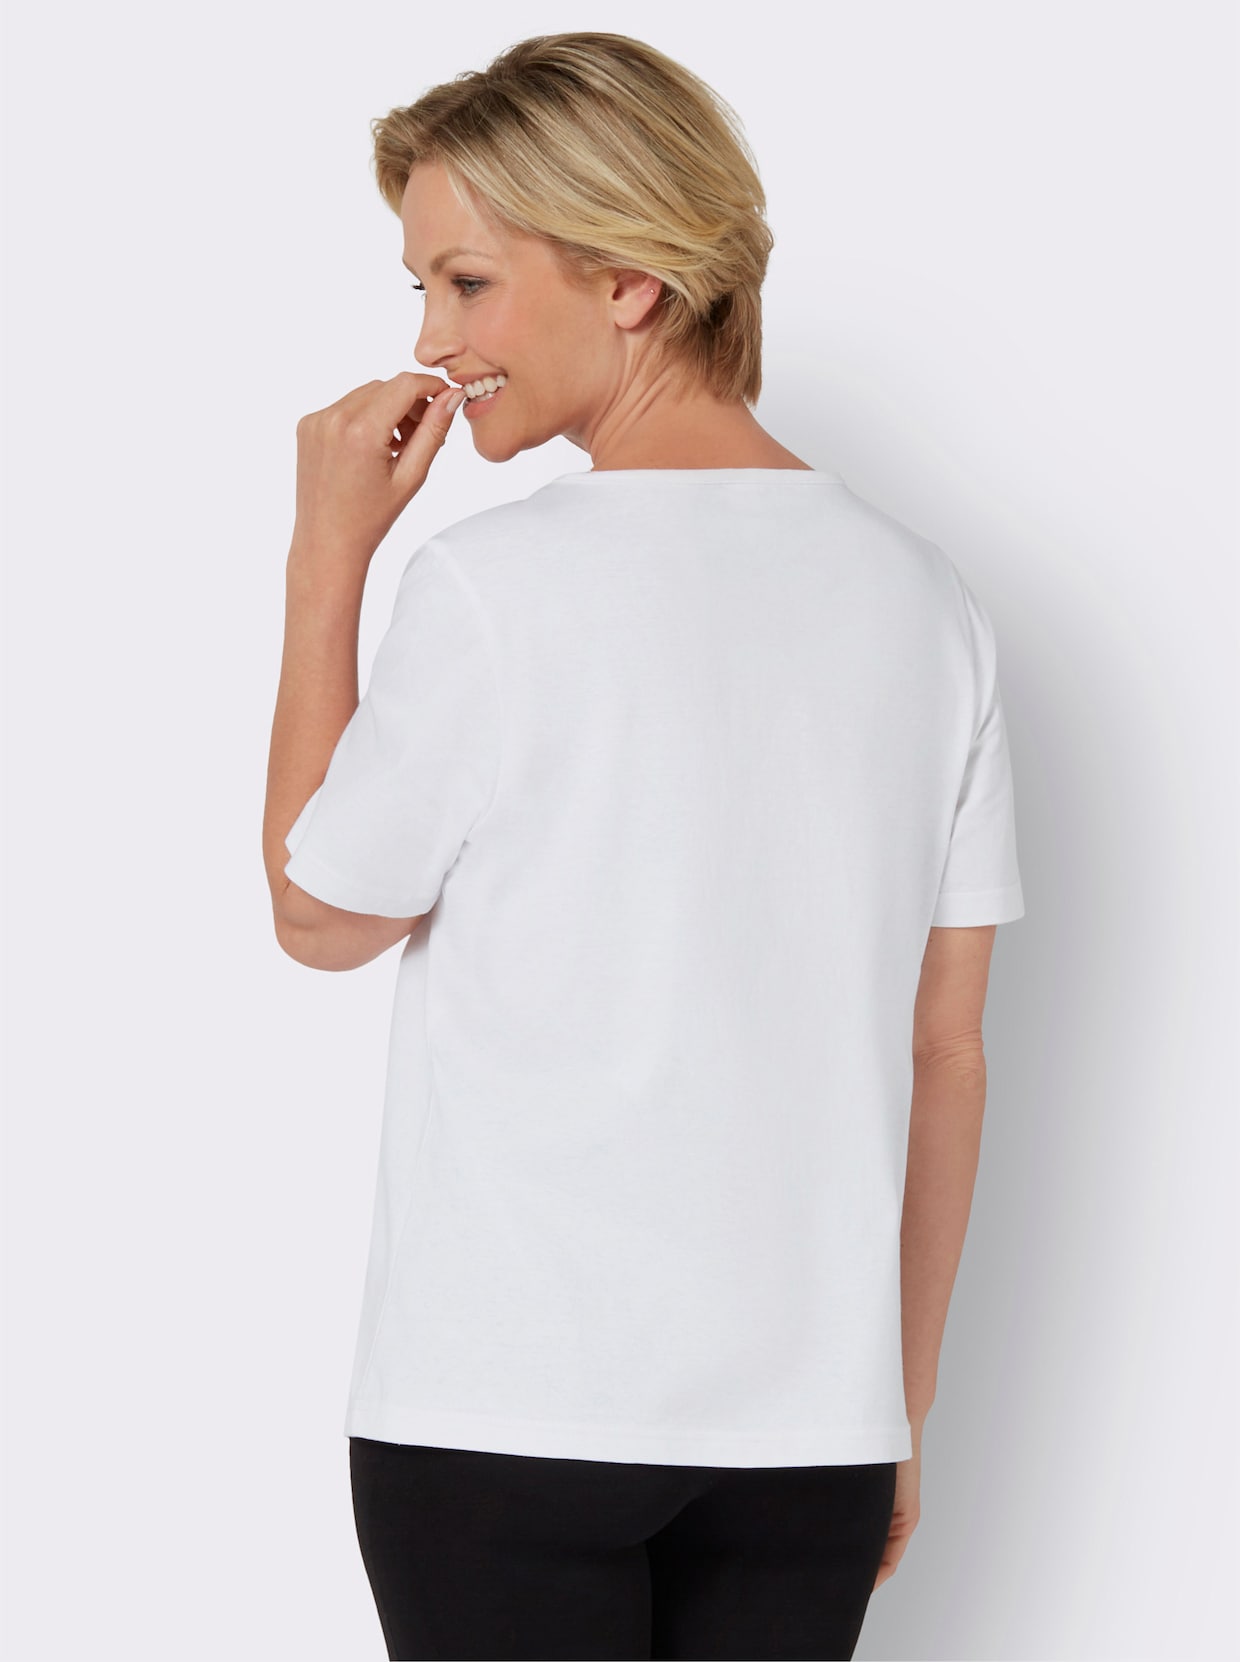 Tričko s krátkým rukávem - bílá-stříbrná